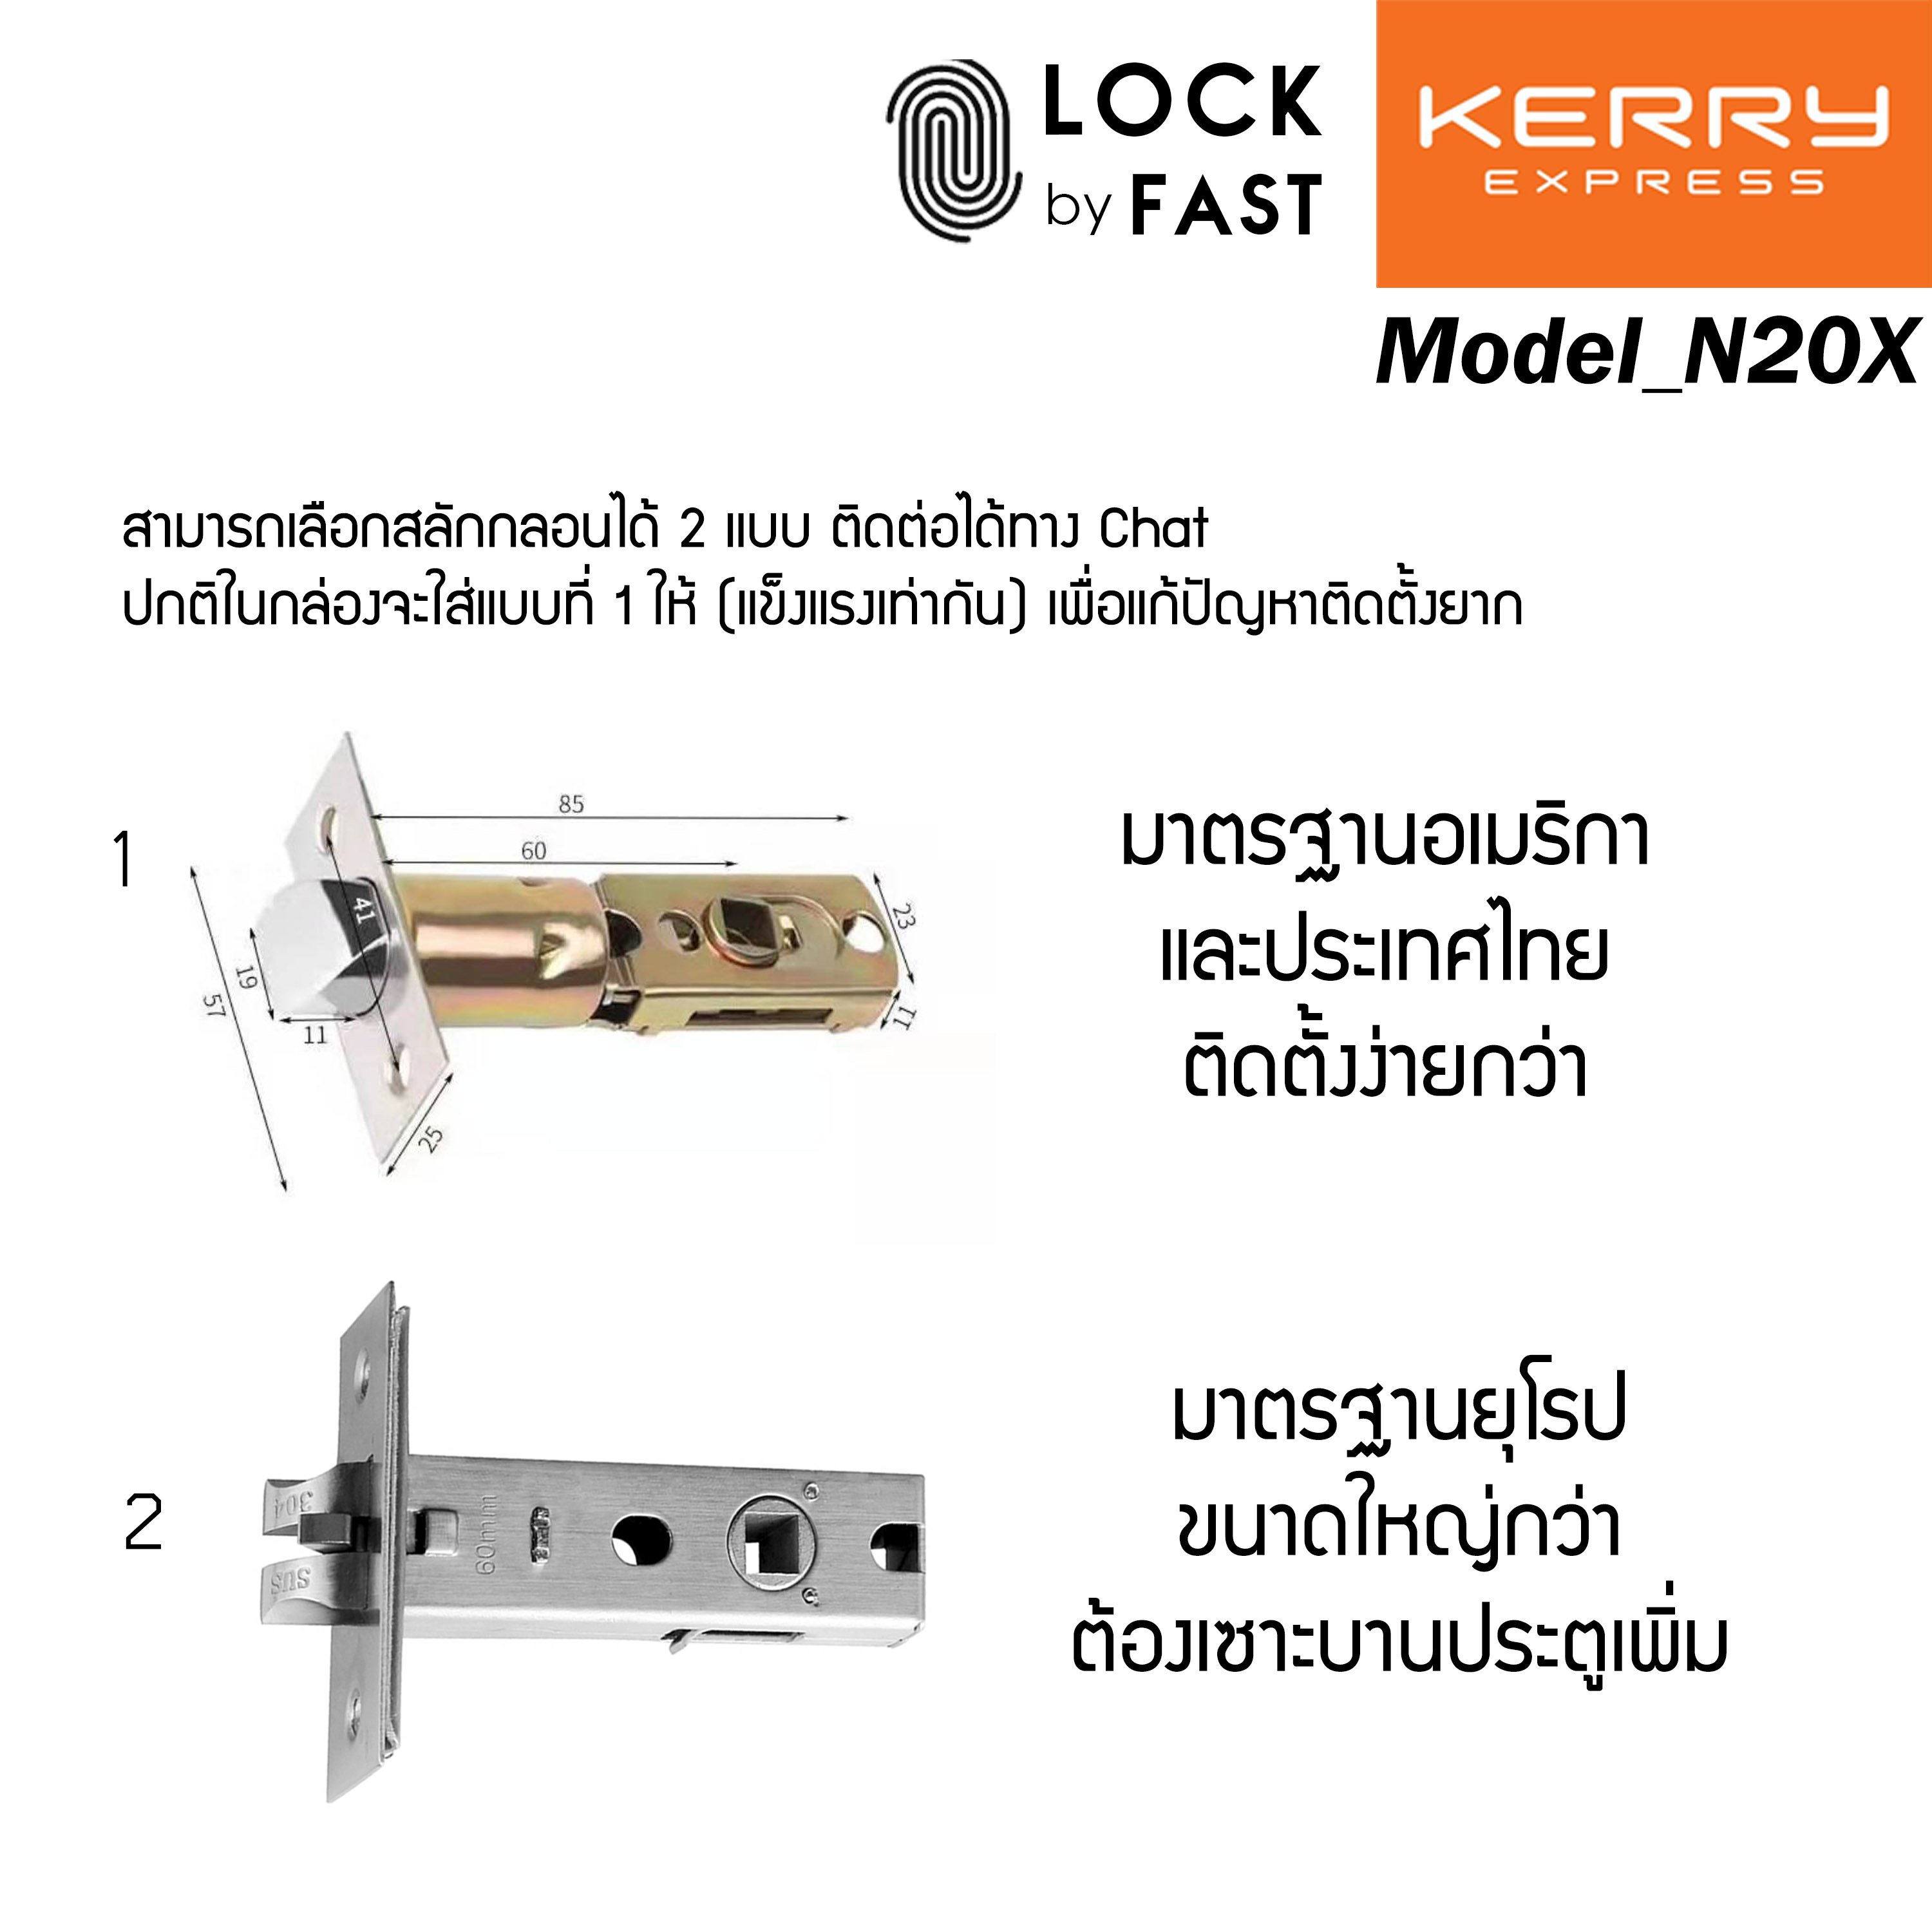 พร้อมส่ง กลอนประตูดิจิตอล Smart Digital Door Lock ติดตั้งด้วยตัวคุณเองได้ สามารถใส่แทนลูกบิดประตูได้เลย สำหรับระยะขอบประตู 30-70mm  มีแอปพิเคชั่นเพิ่มความสะดวก กลอนดิจิตอล Digital Door Lock N20x (ใหม่) สแกนไว 0.3 วิพร้อมคู่มือการติดตั้งและใช้งานแอพภาษาไทย